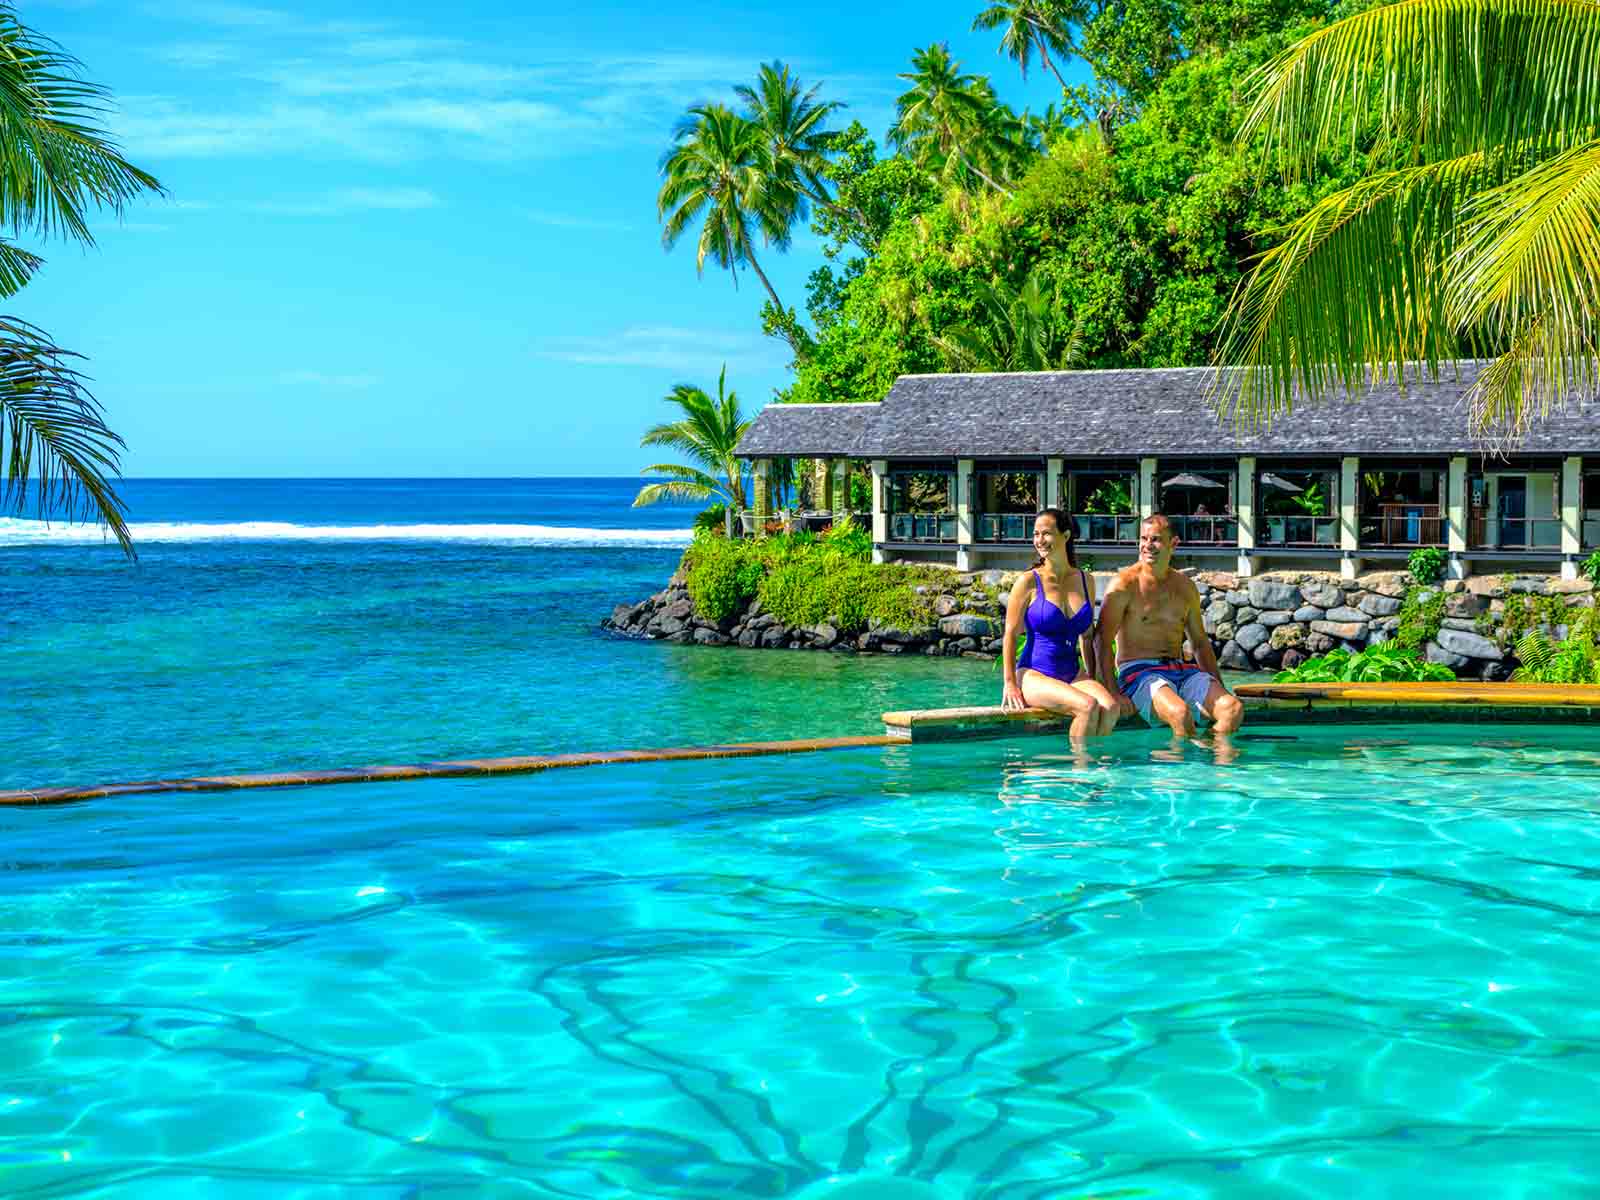 Seabreeze resort, Samoa